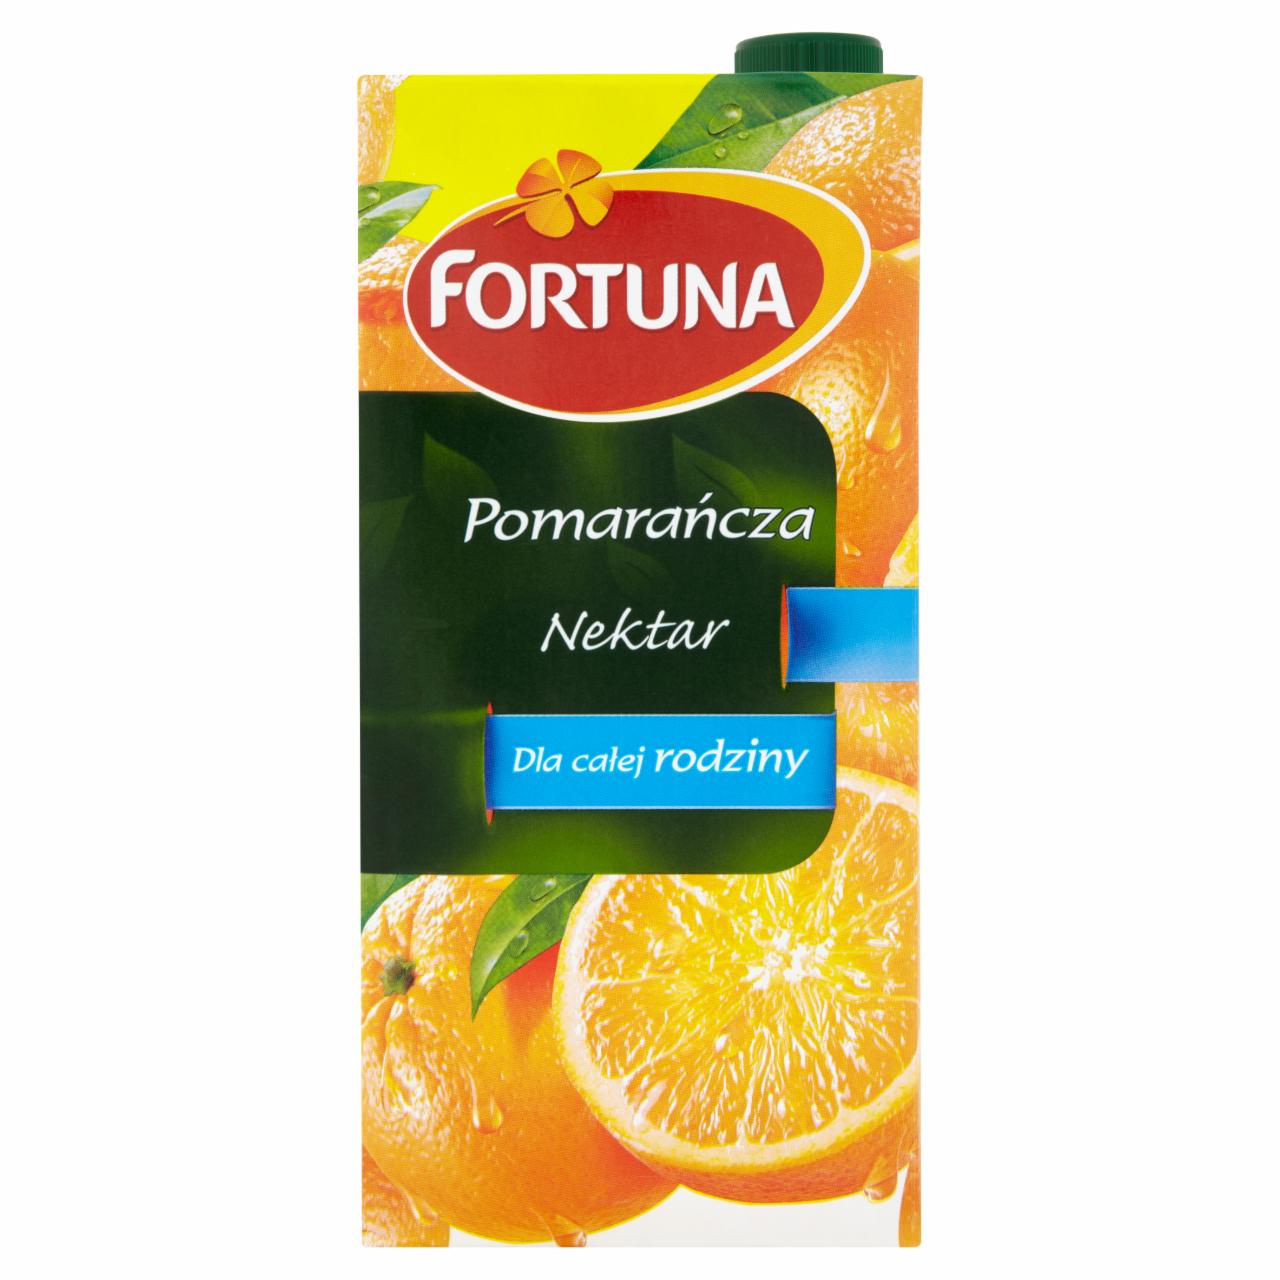 Zdjęcia - Fortuna Pomarańcza Nektar 2 l